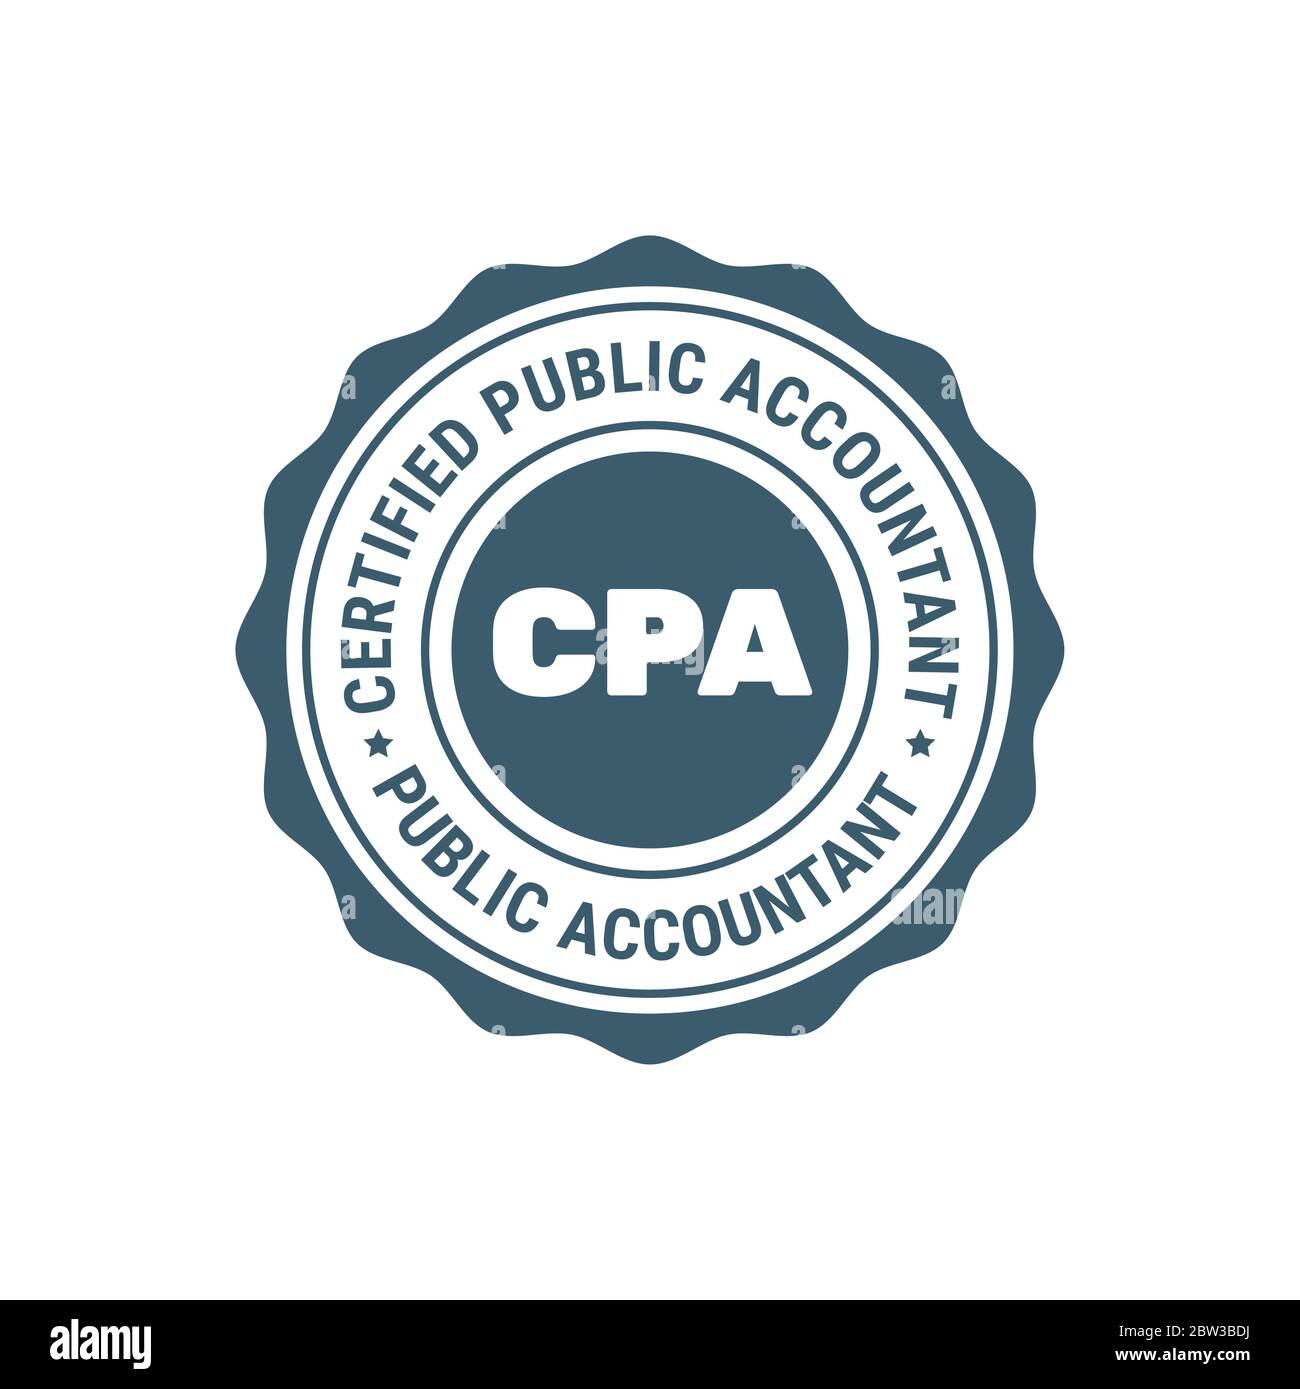 Zertifiziertes öffentliches Buchhalter Zeichen oder Stempel, CPA Buchhalter Siegel, Buchhaltungs Abzeichen Stock Vektor